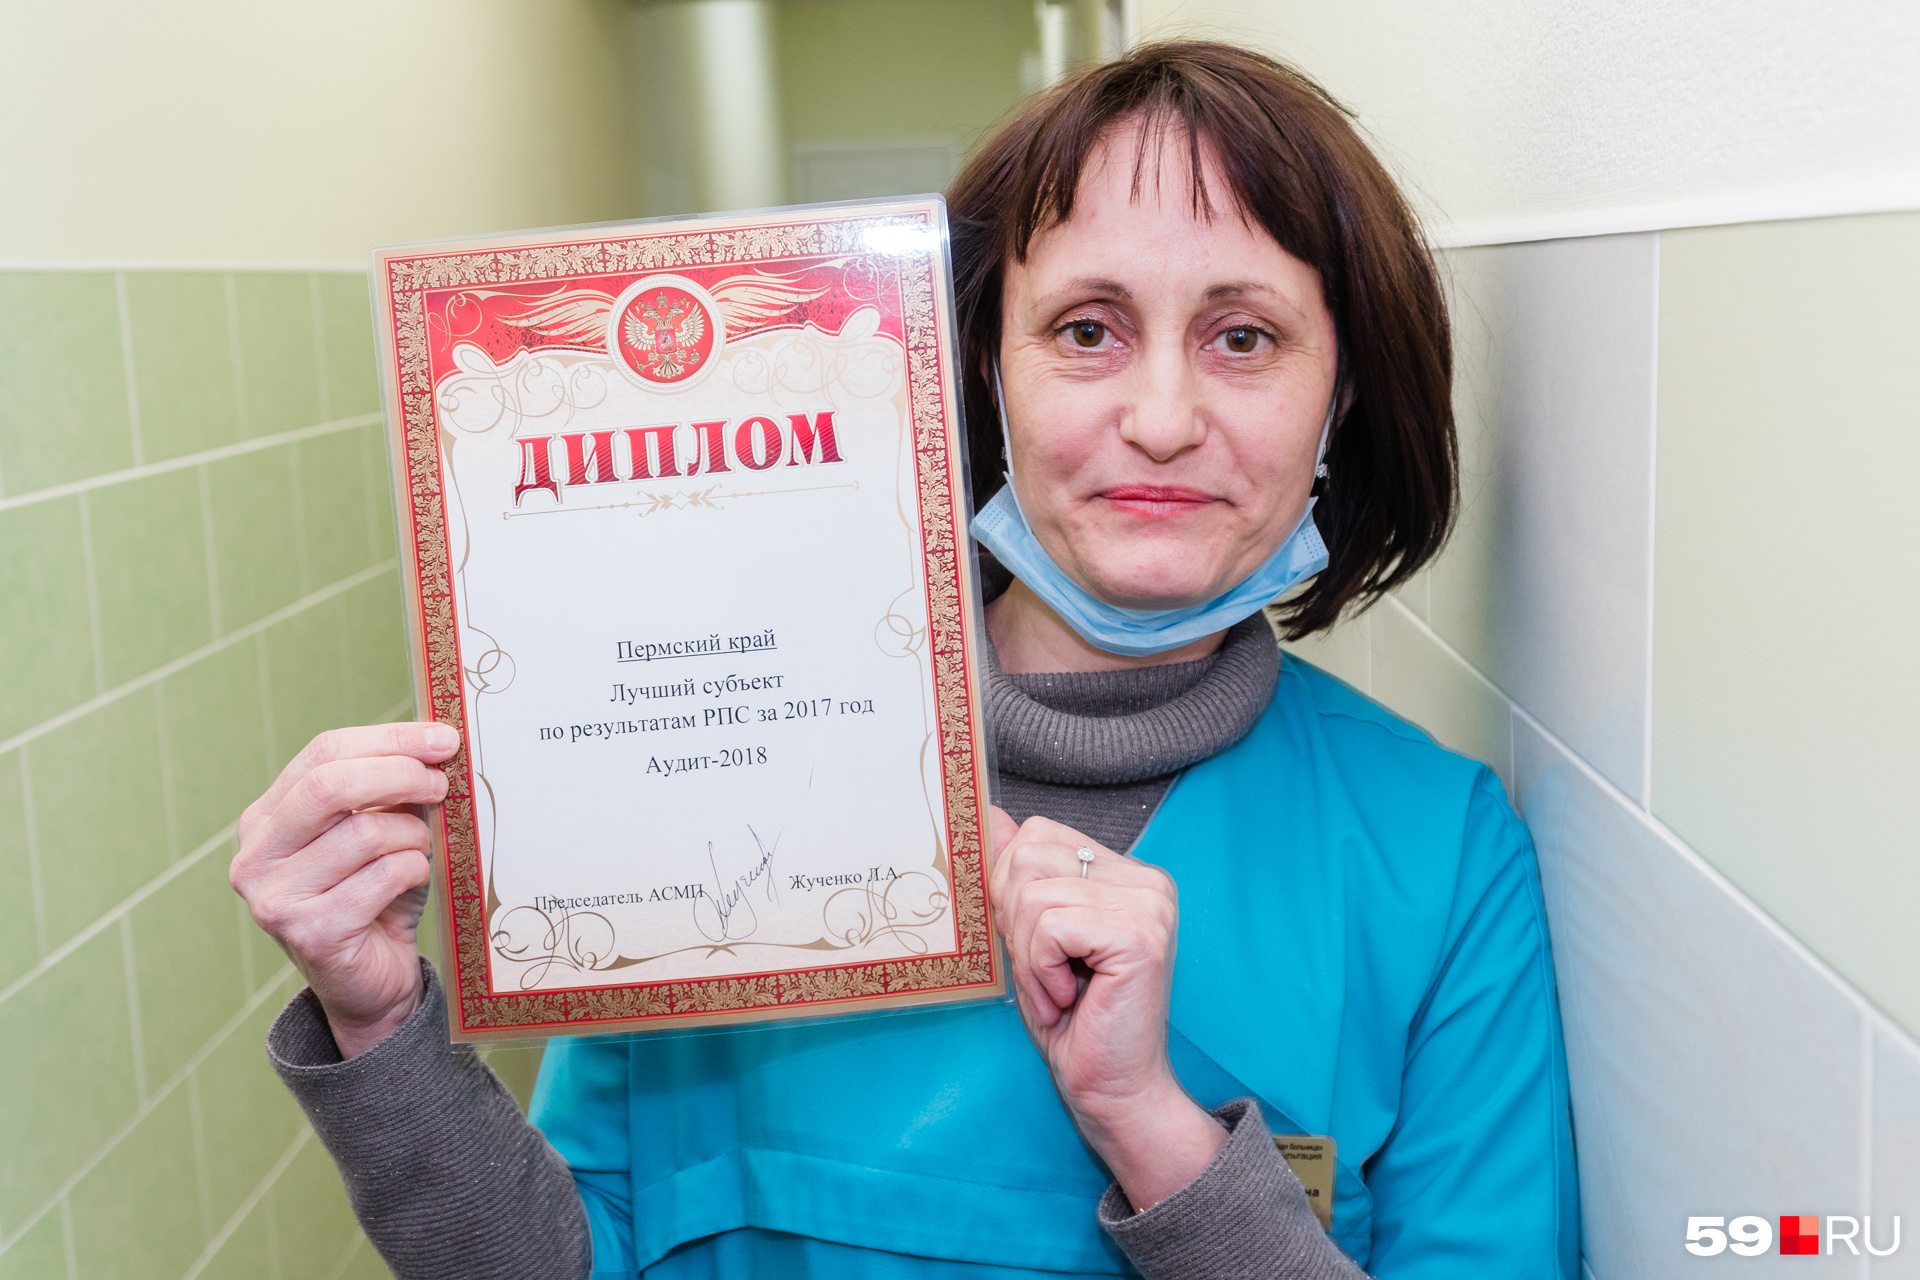 Заведующая медико-генетическая лабораторией, главный детский генетик Пермского края Вера Курилова гордится итогами работы лаборатории